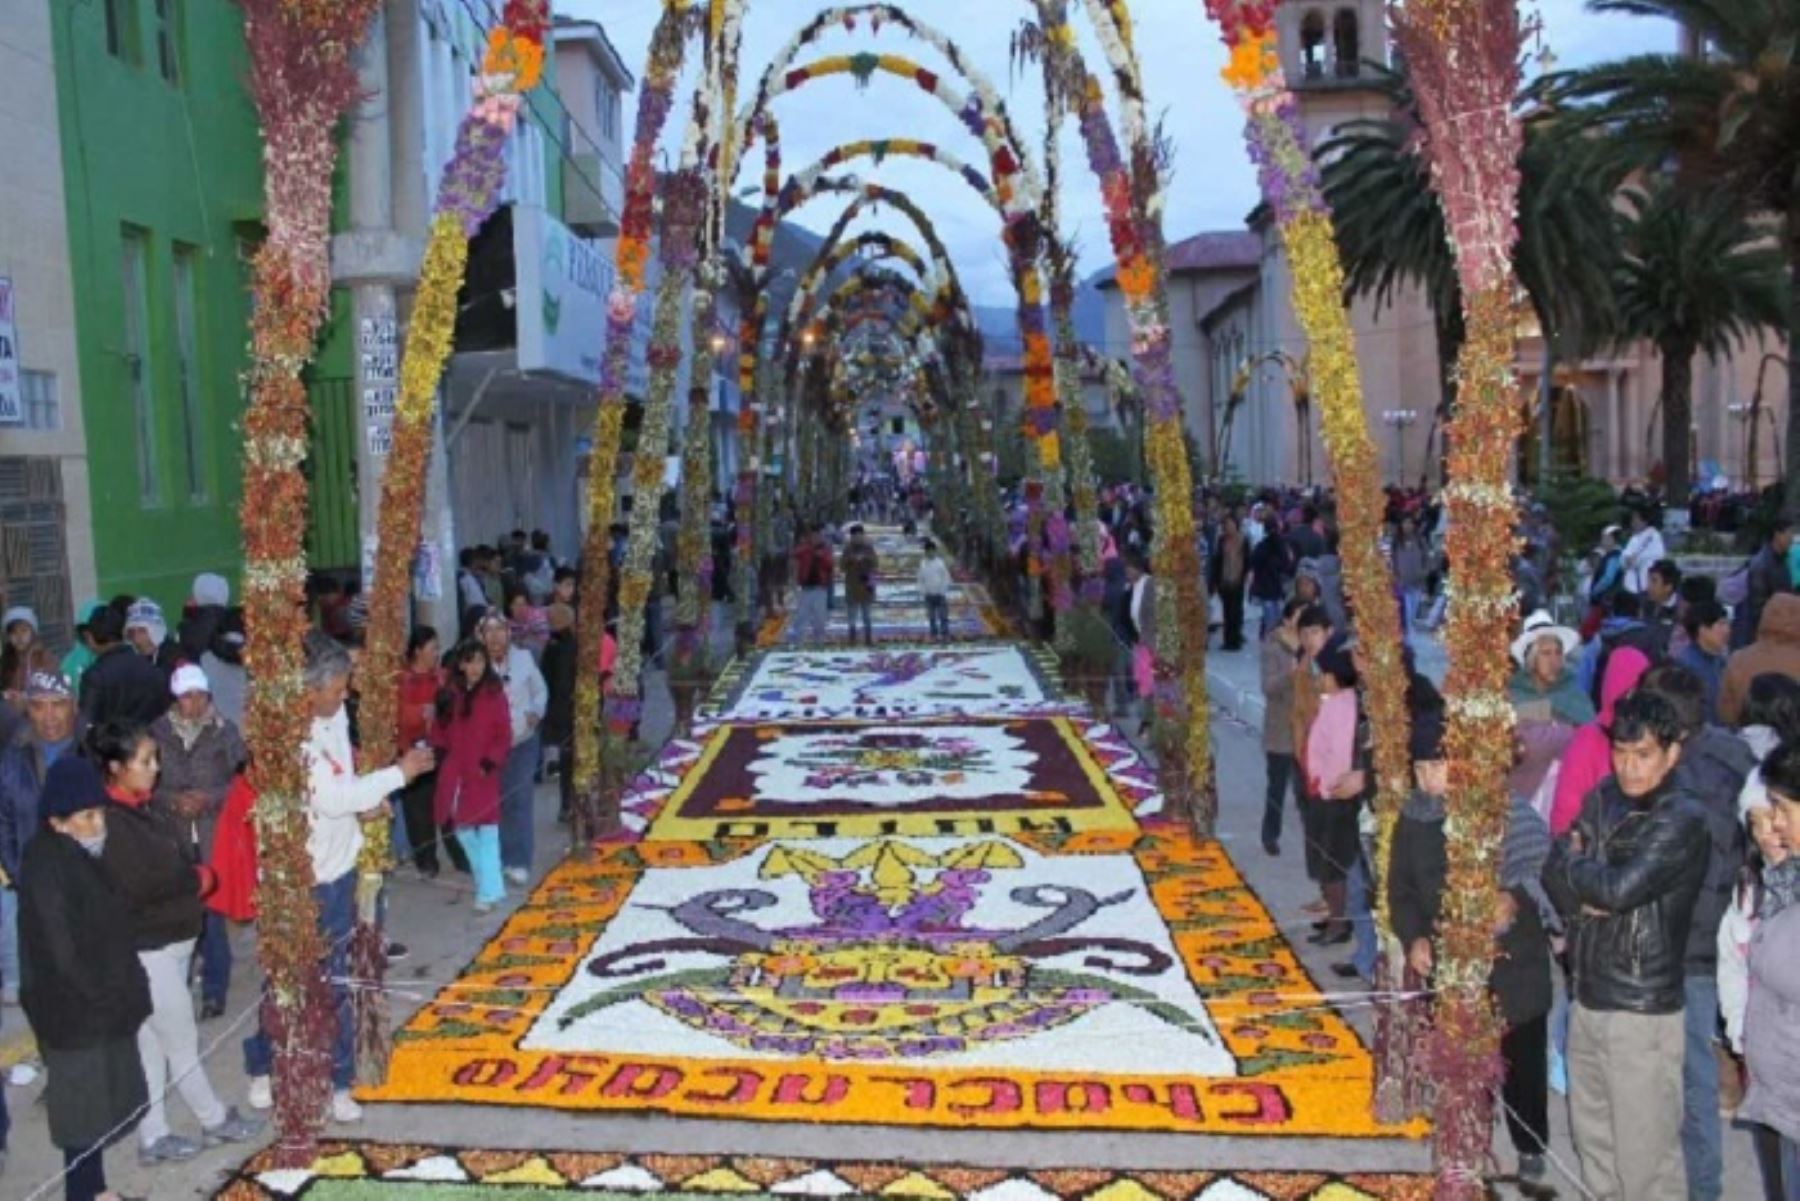 La Semana Santa en la ciudad de Tarma (Junín) es una de las más conocidas en el Perú. Foto: ANDINA/Difusión